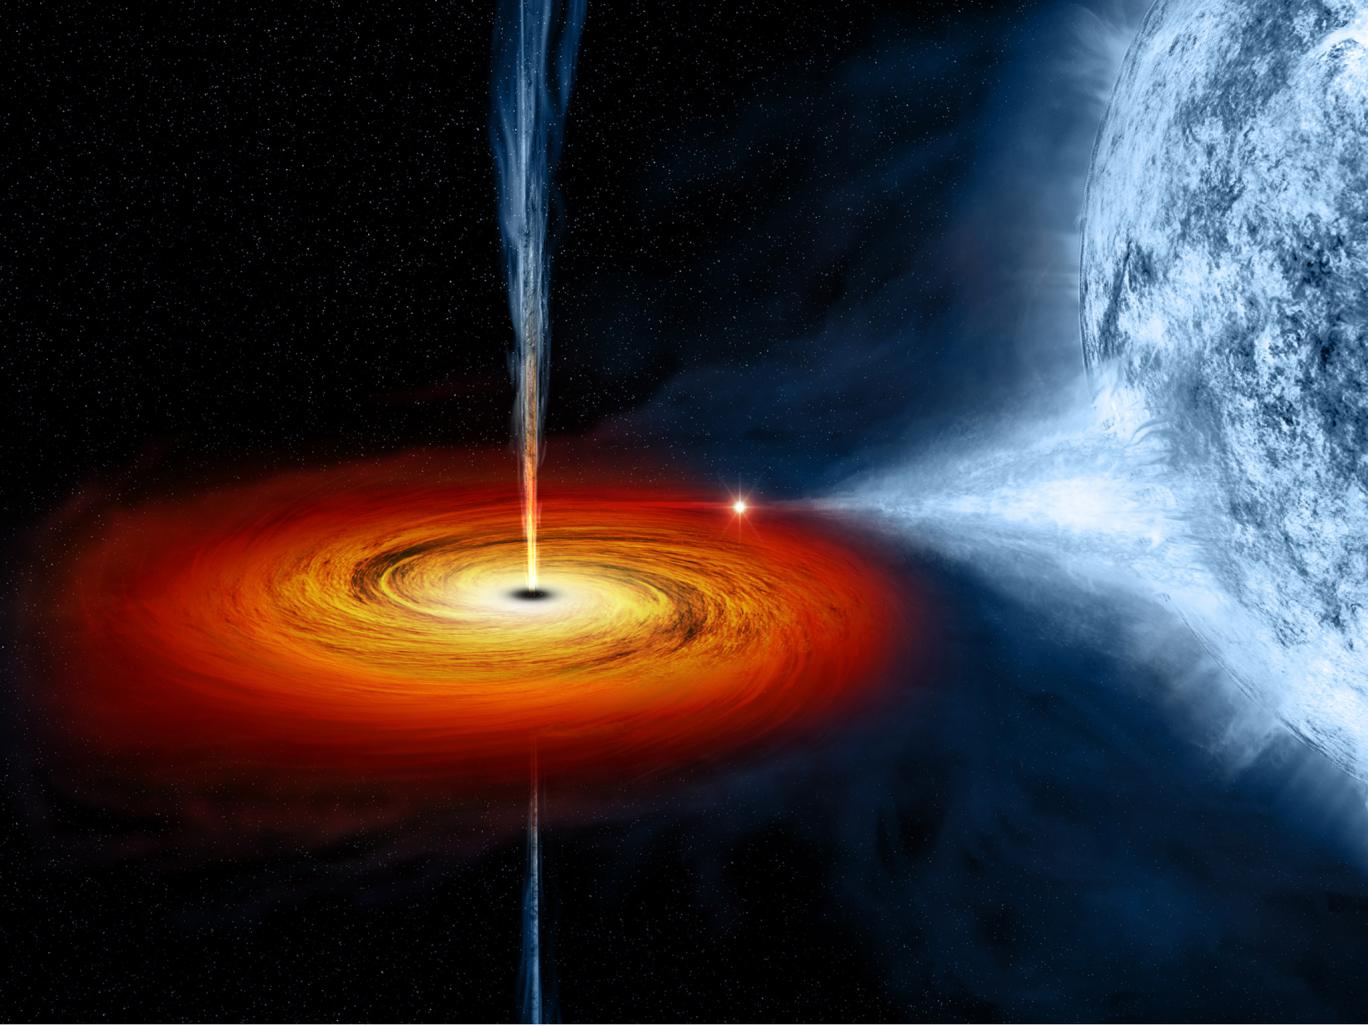 Lỗ đen vũ trụ được coi là một trong những bí ẩn lớn nhất đối với các nhà khoa học